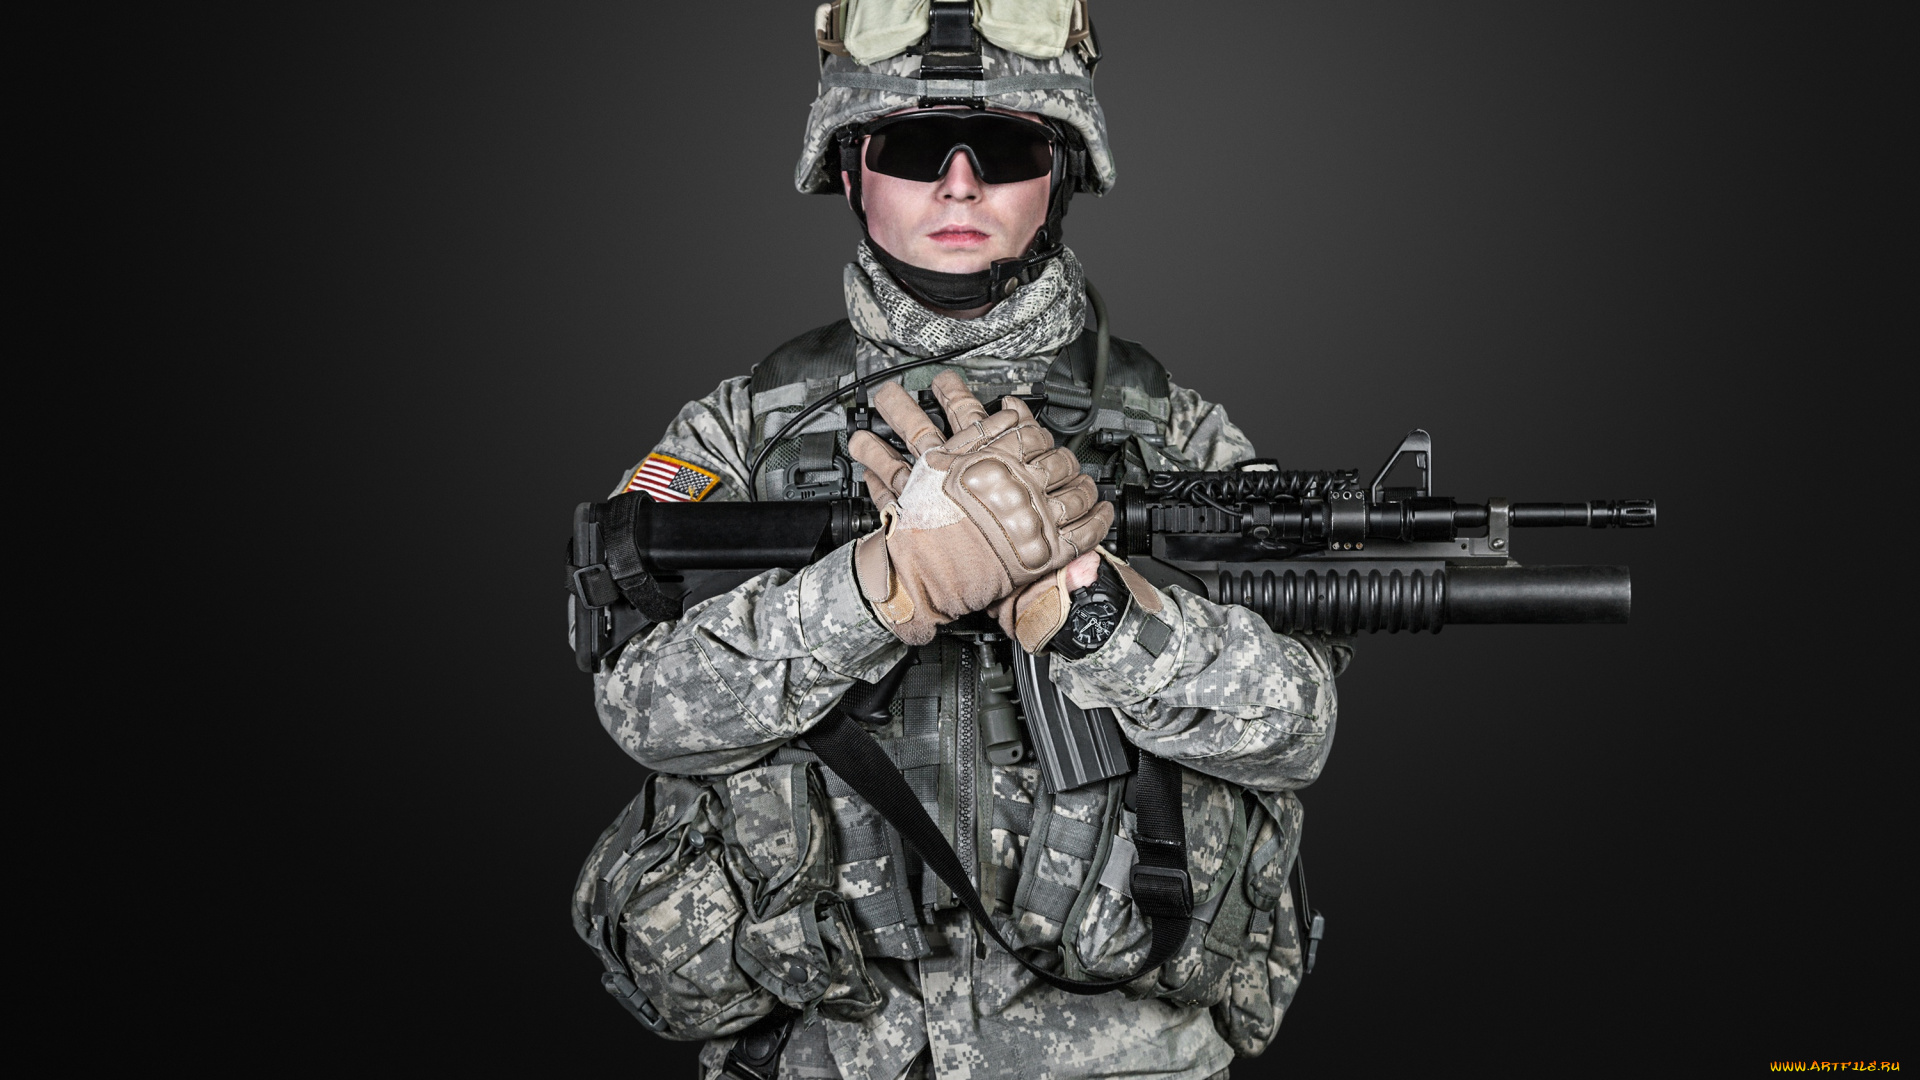 оружие, армия, спецназ, шлем, перчатки, камуфляж, очки, солдат, автомат